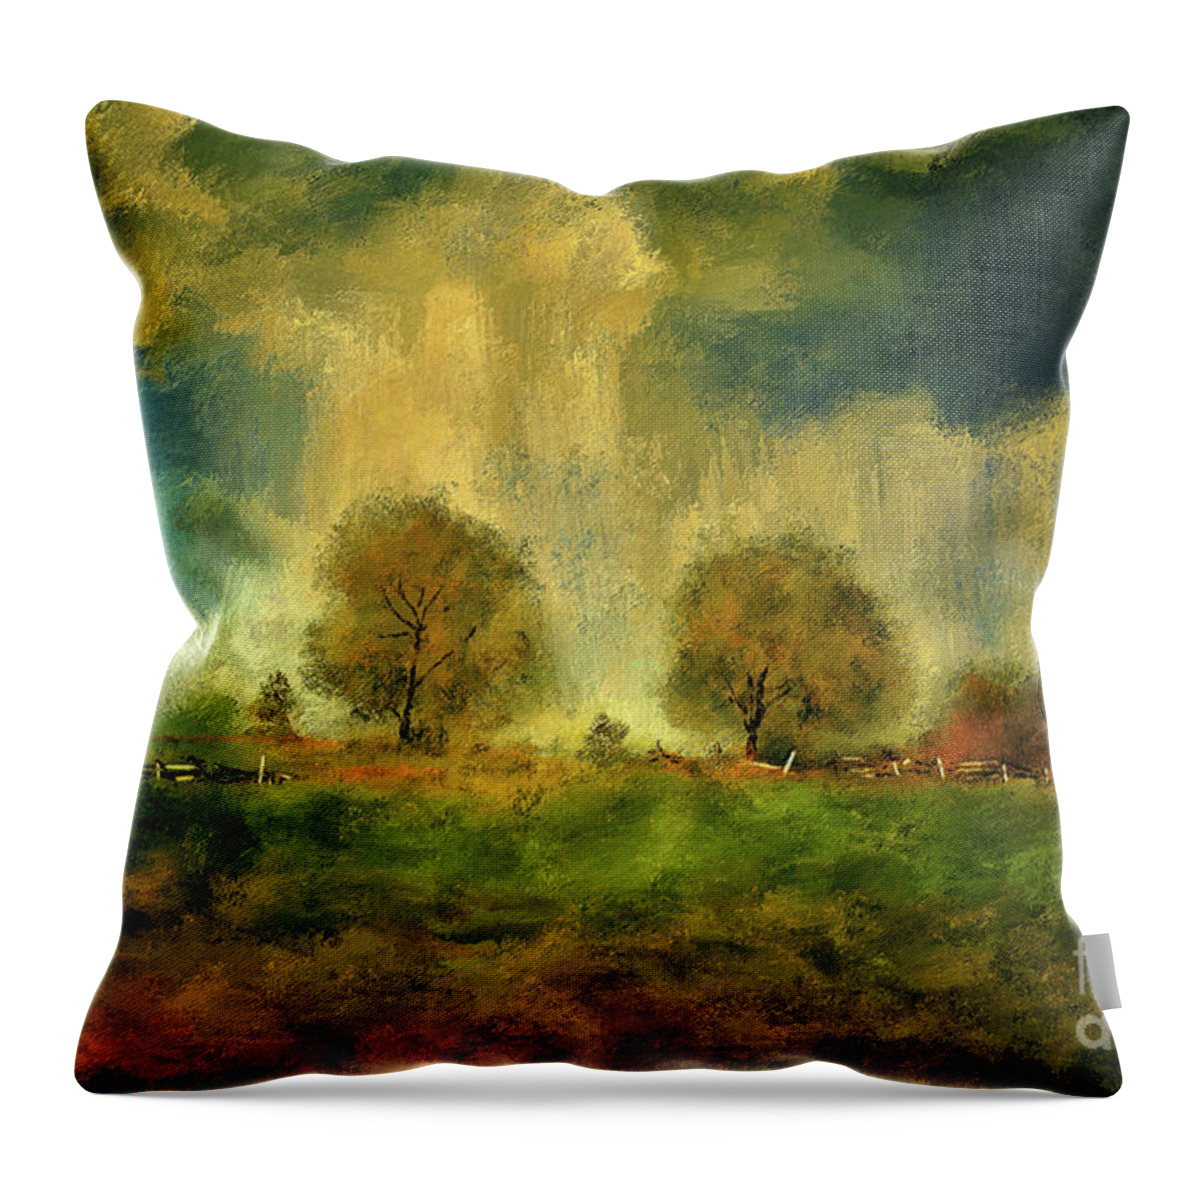 Civil War Throw Pillow featuring the digital art Approaching Storm At Antietam by Lois Bryan